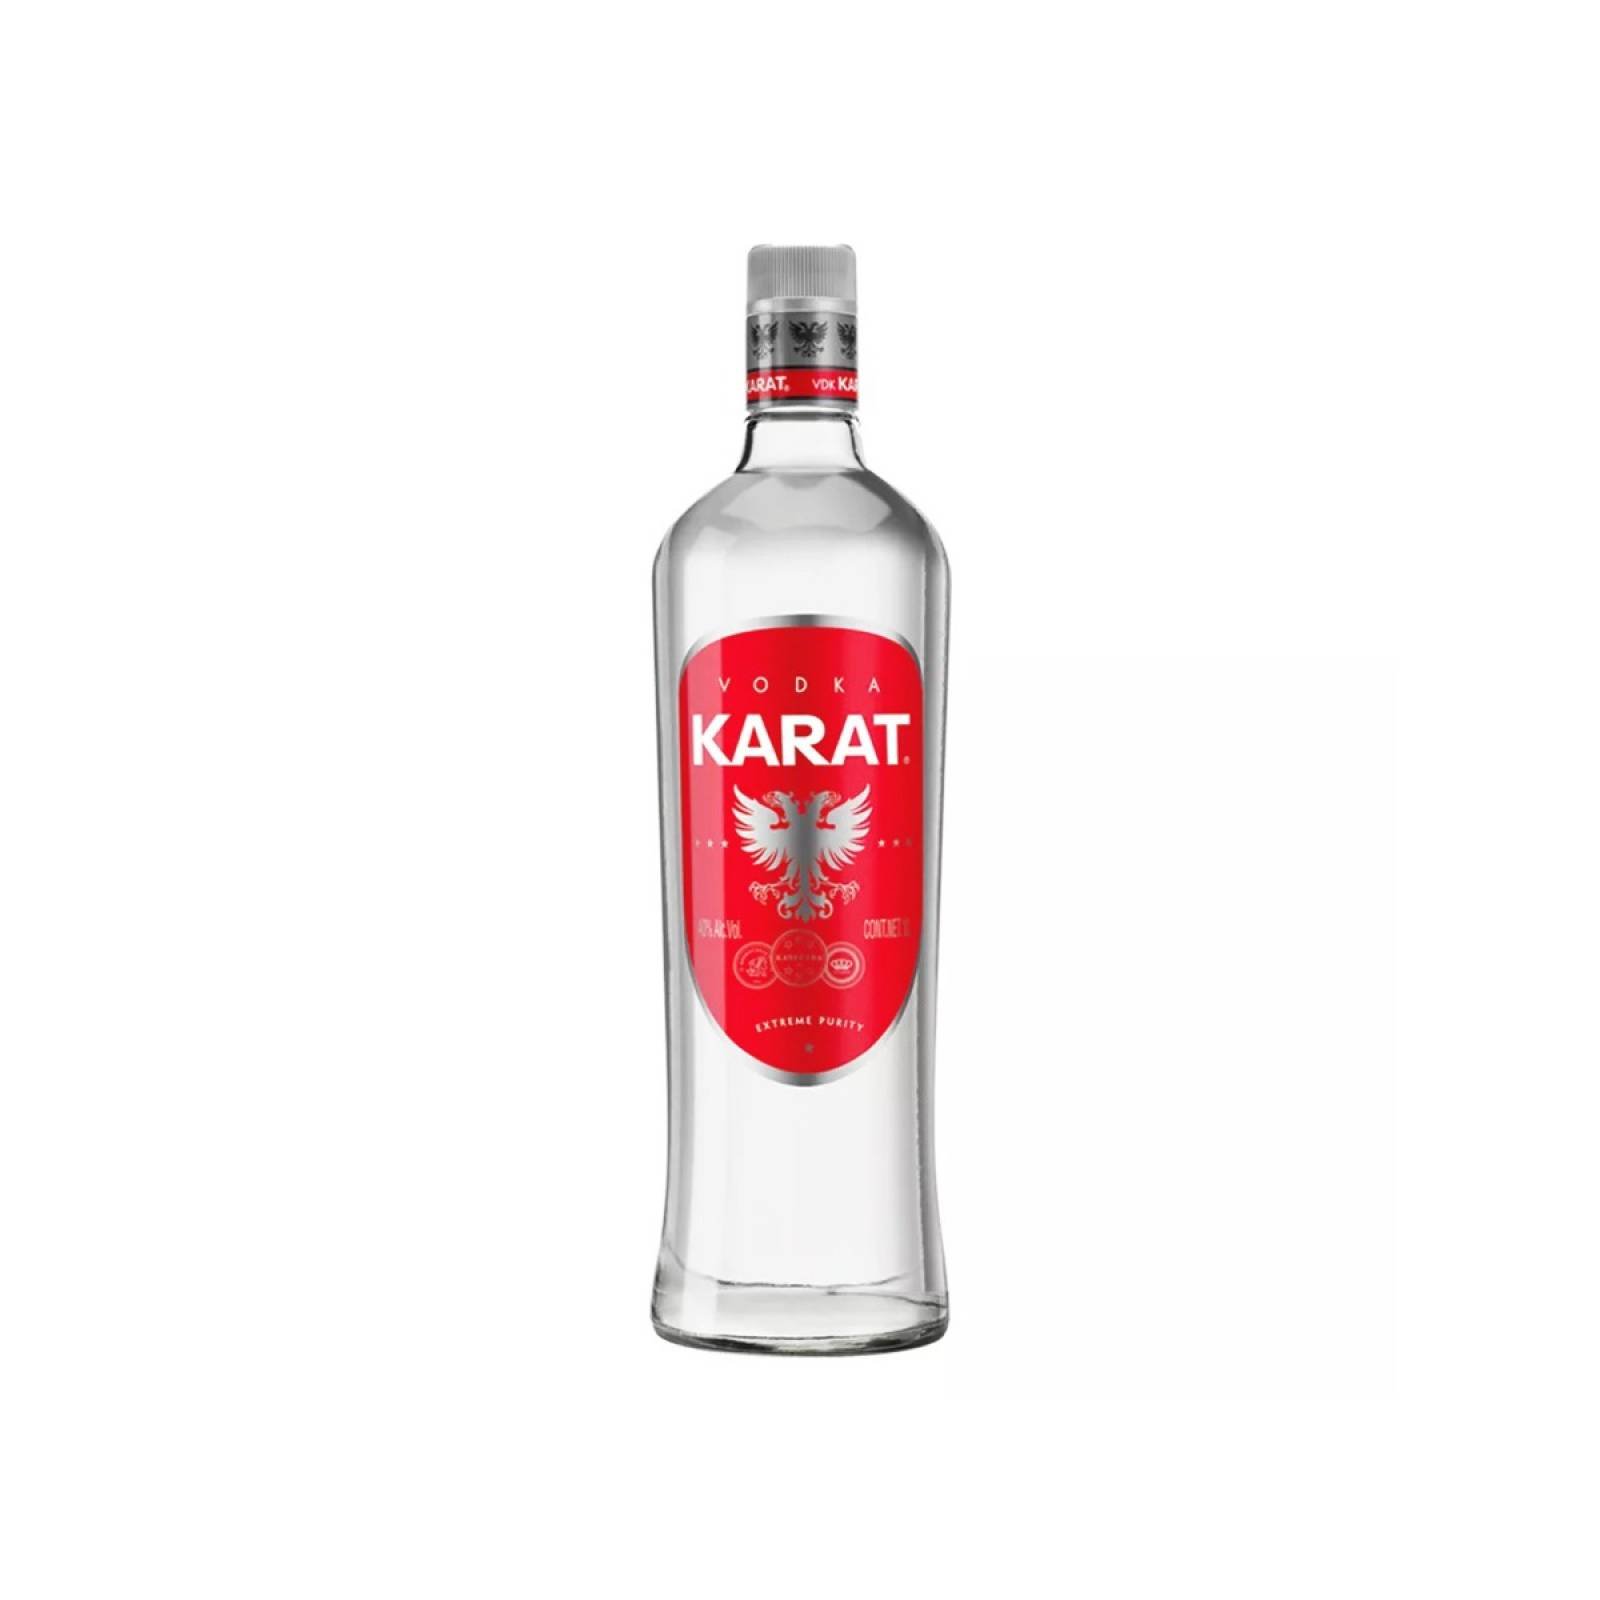 Vodka Nacional Karat 1000 Ml.